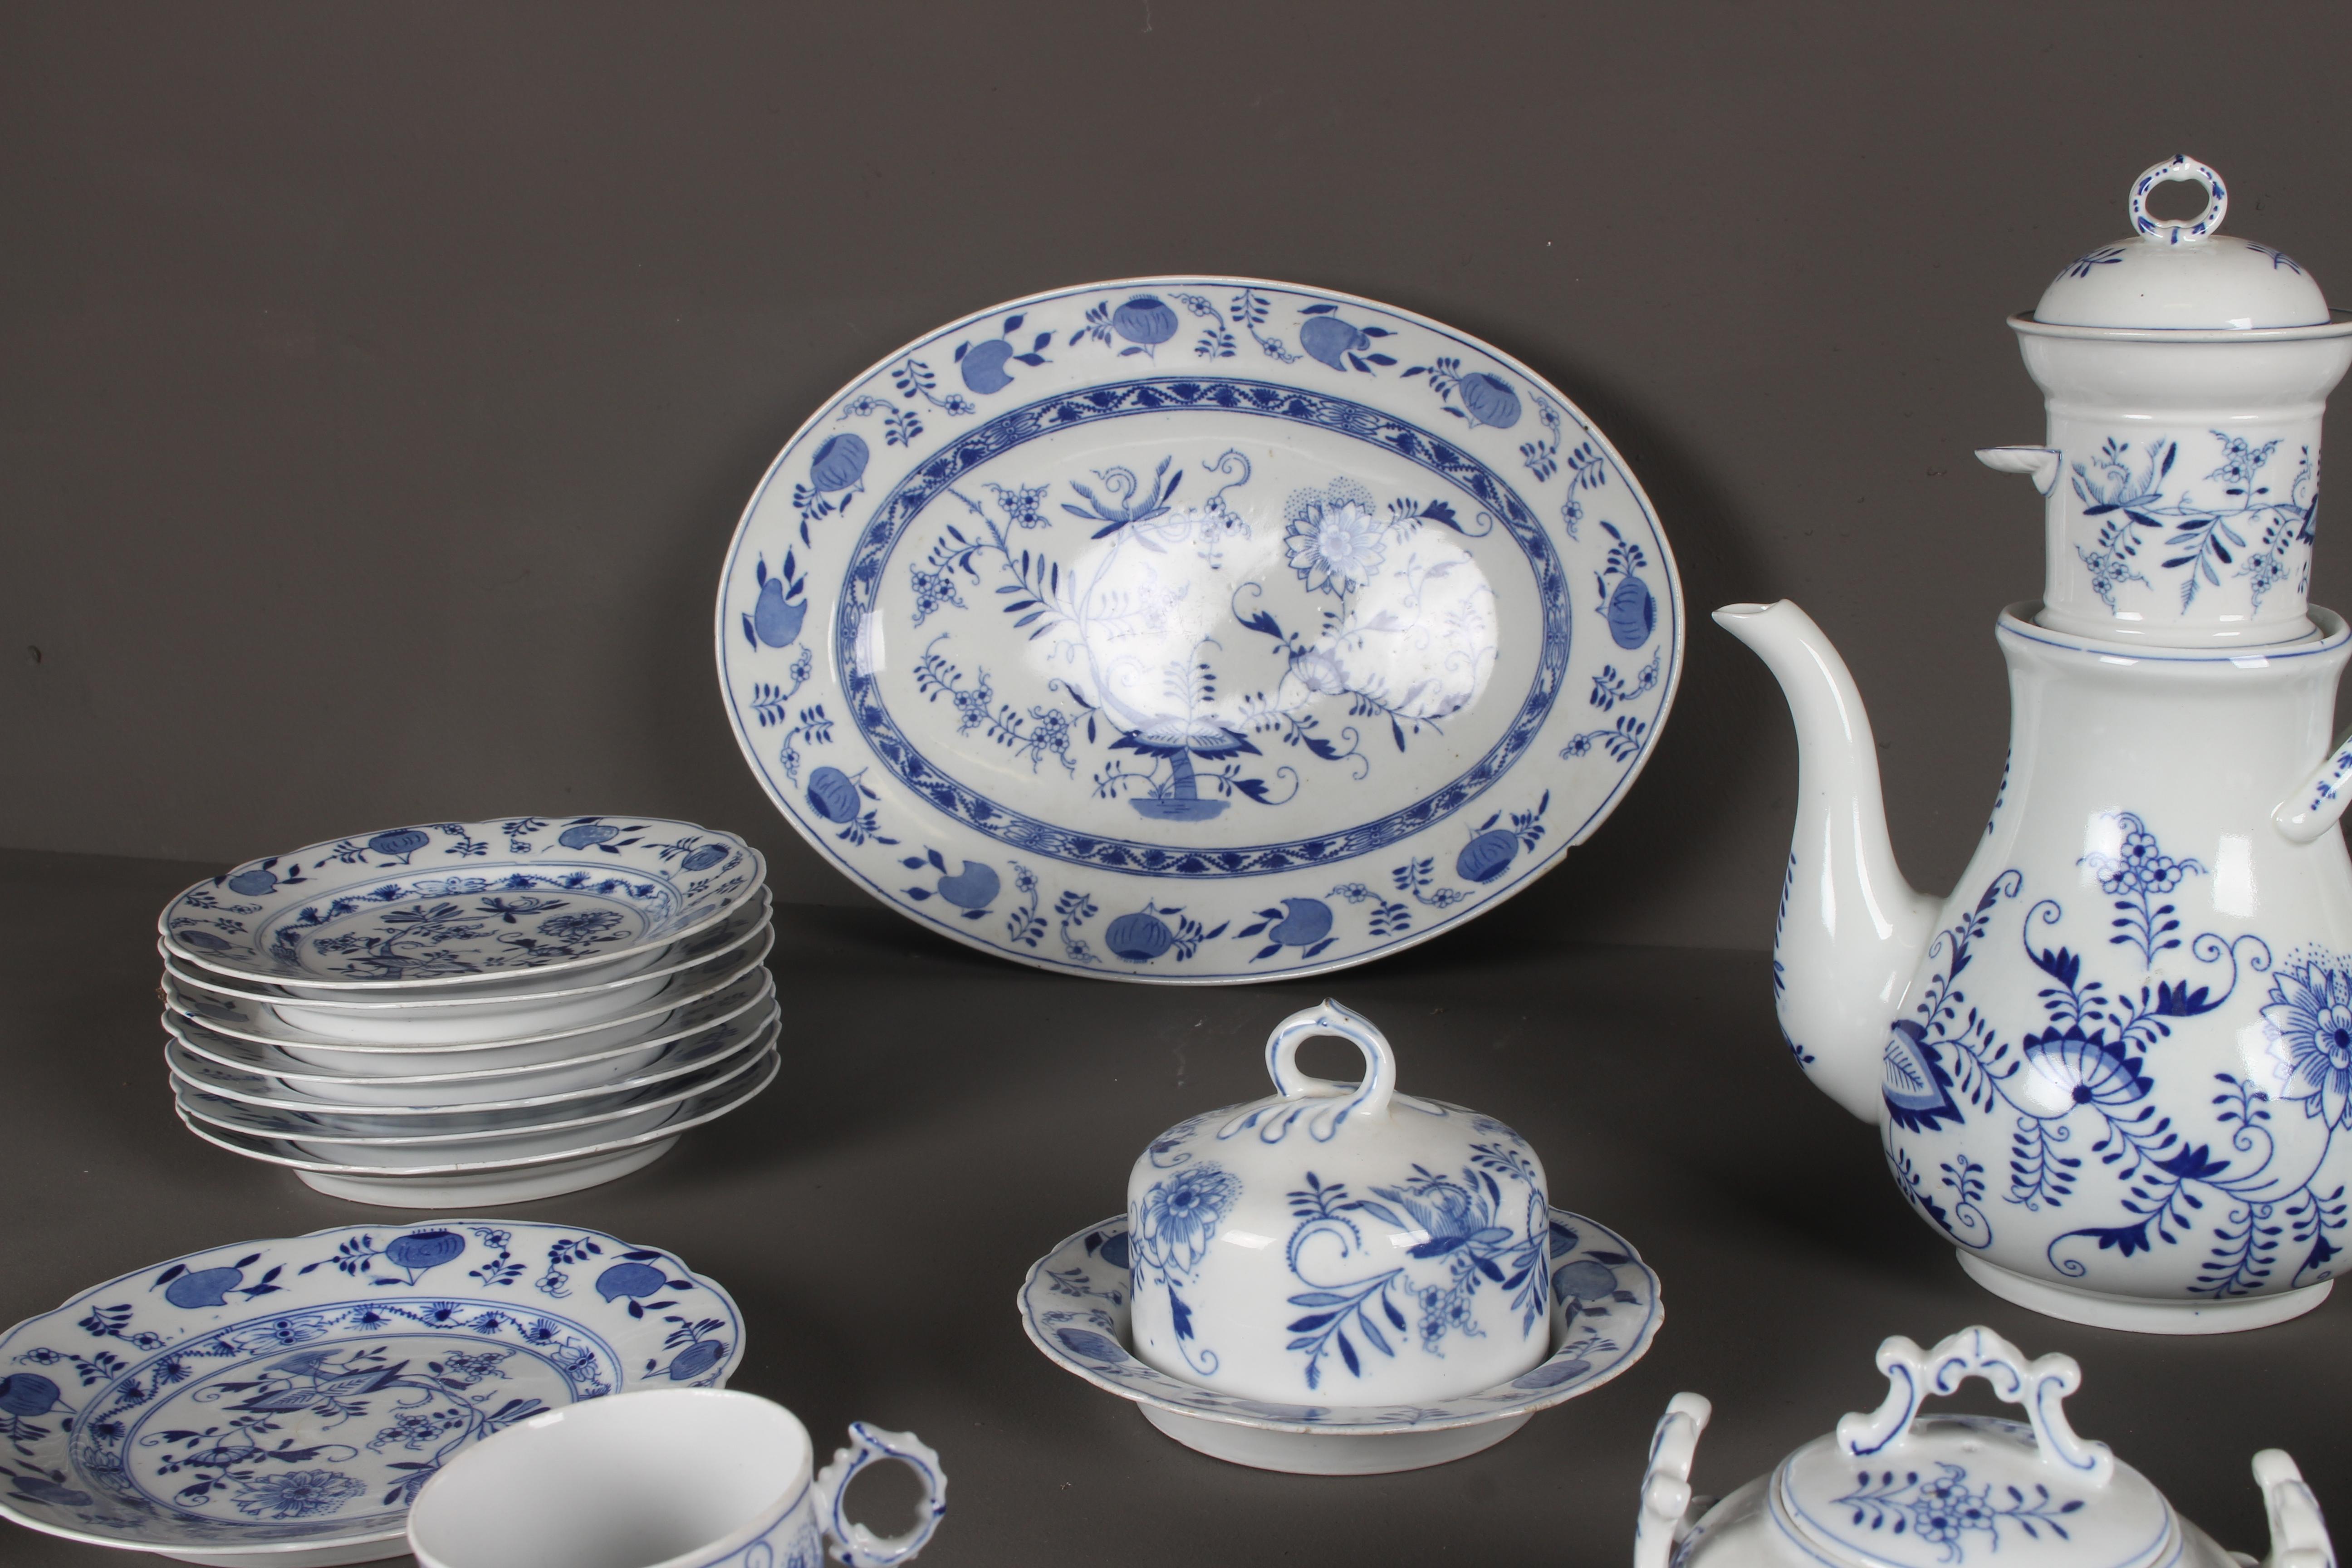 Rare Dutch Louis Regout Large 60-Piece Porcelain Blue Onion Table Service, 1890 For Sale 6